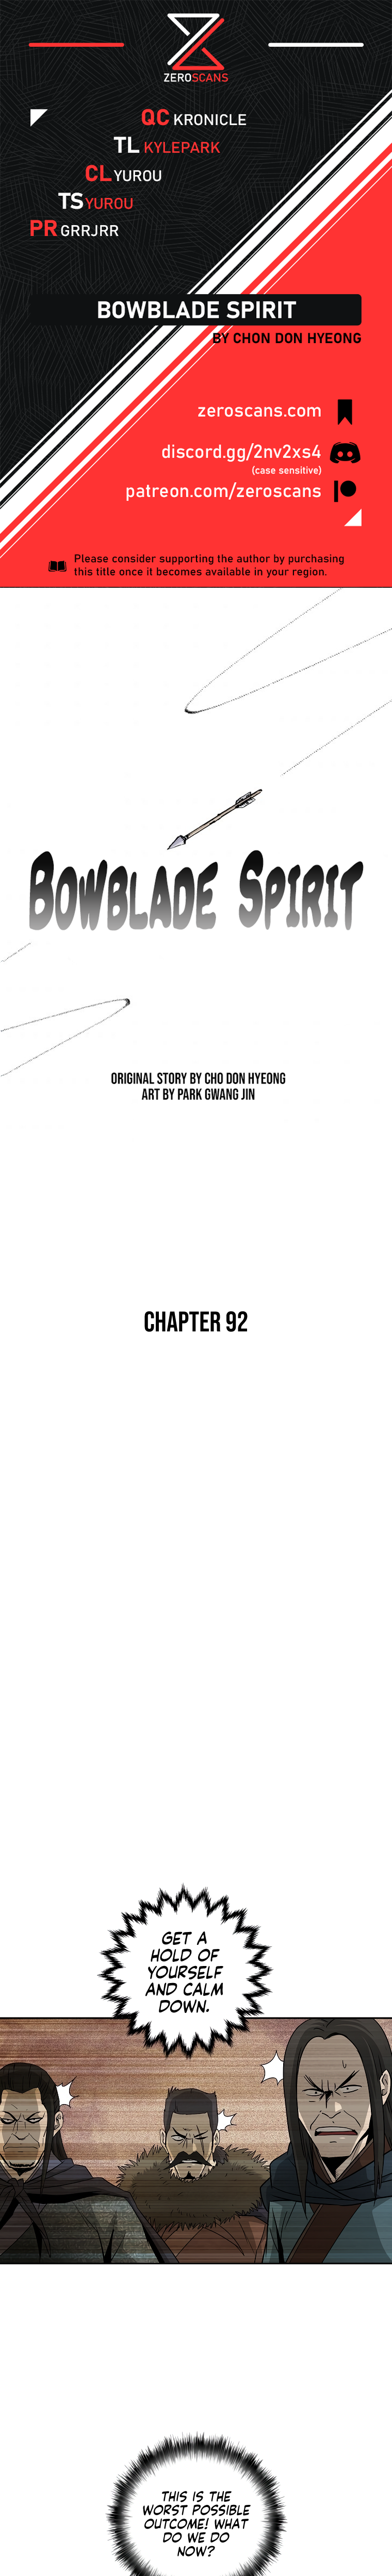 Bowblade Spirit - Chapter 8307 - Image 1